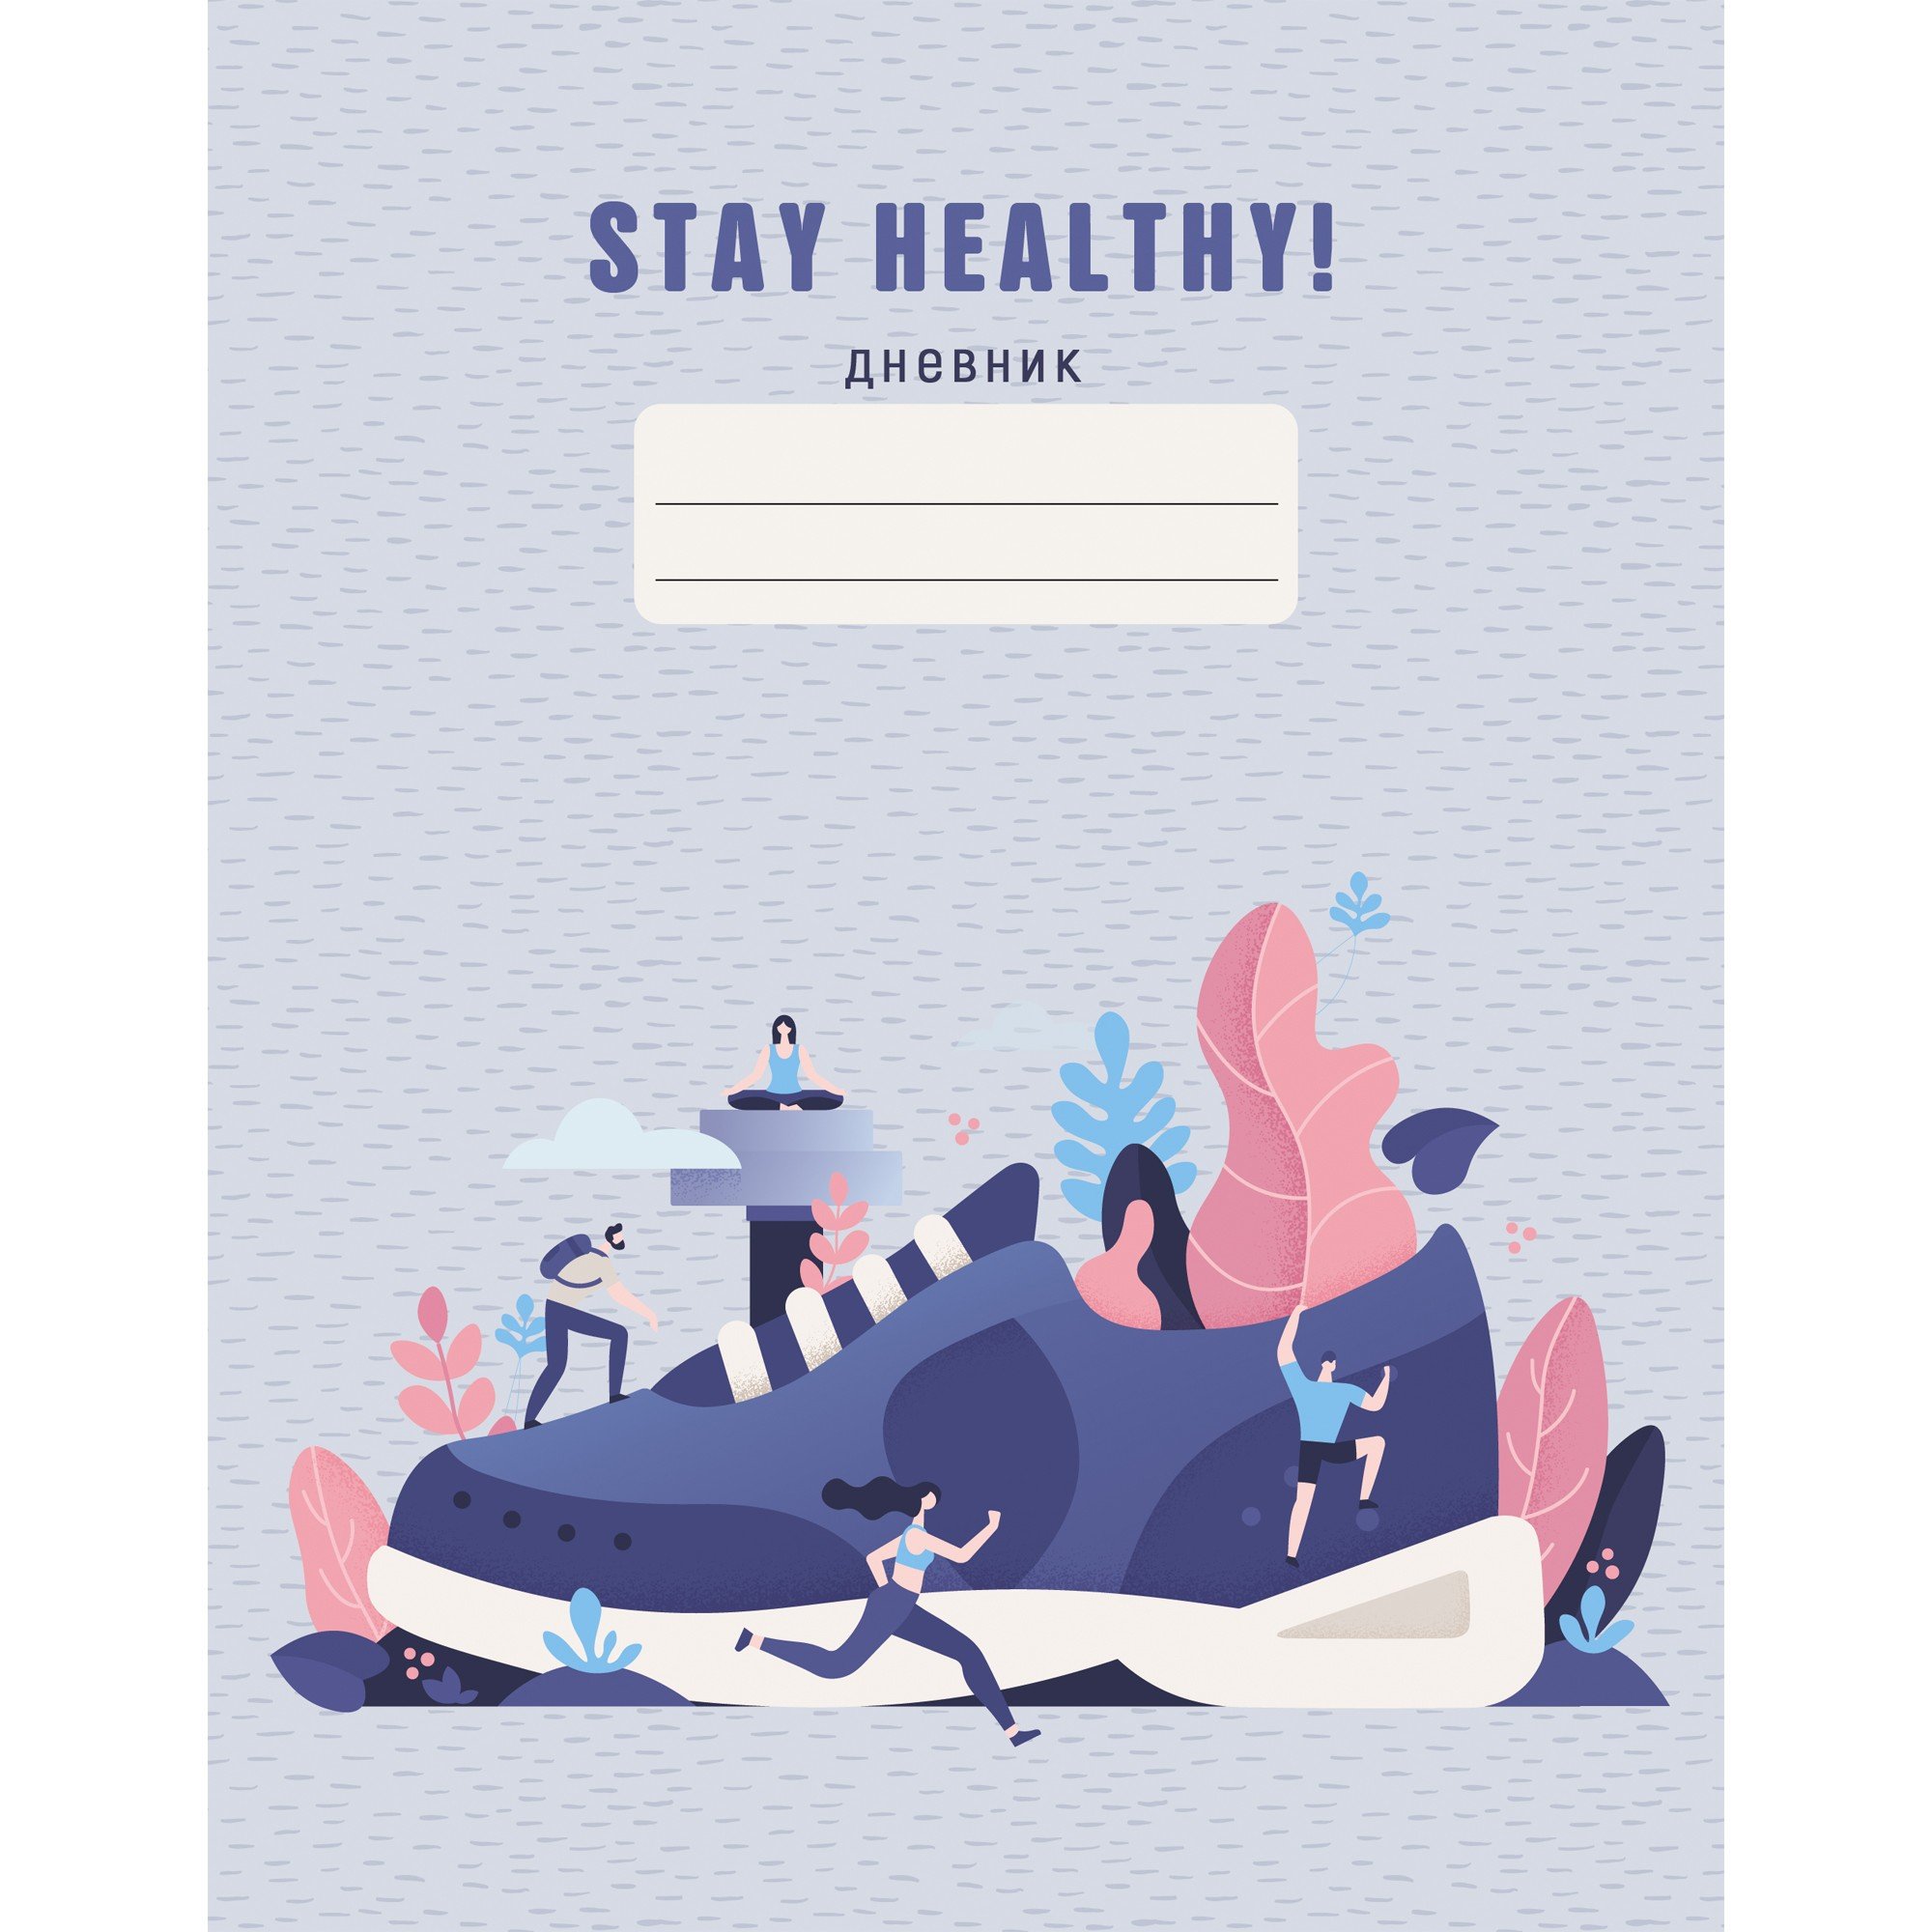 Дневник школьный Stay Healthy, 48 листов, дизайн 3